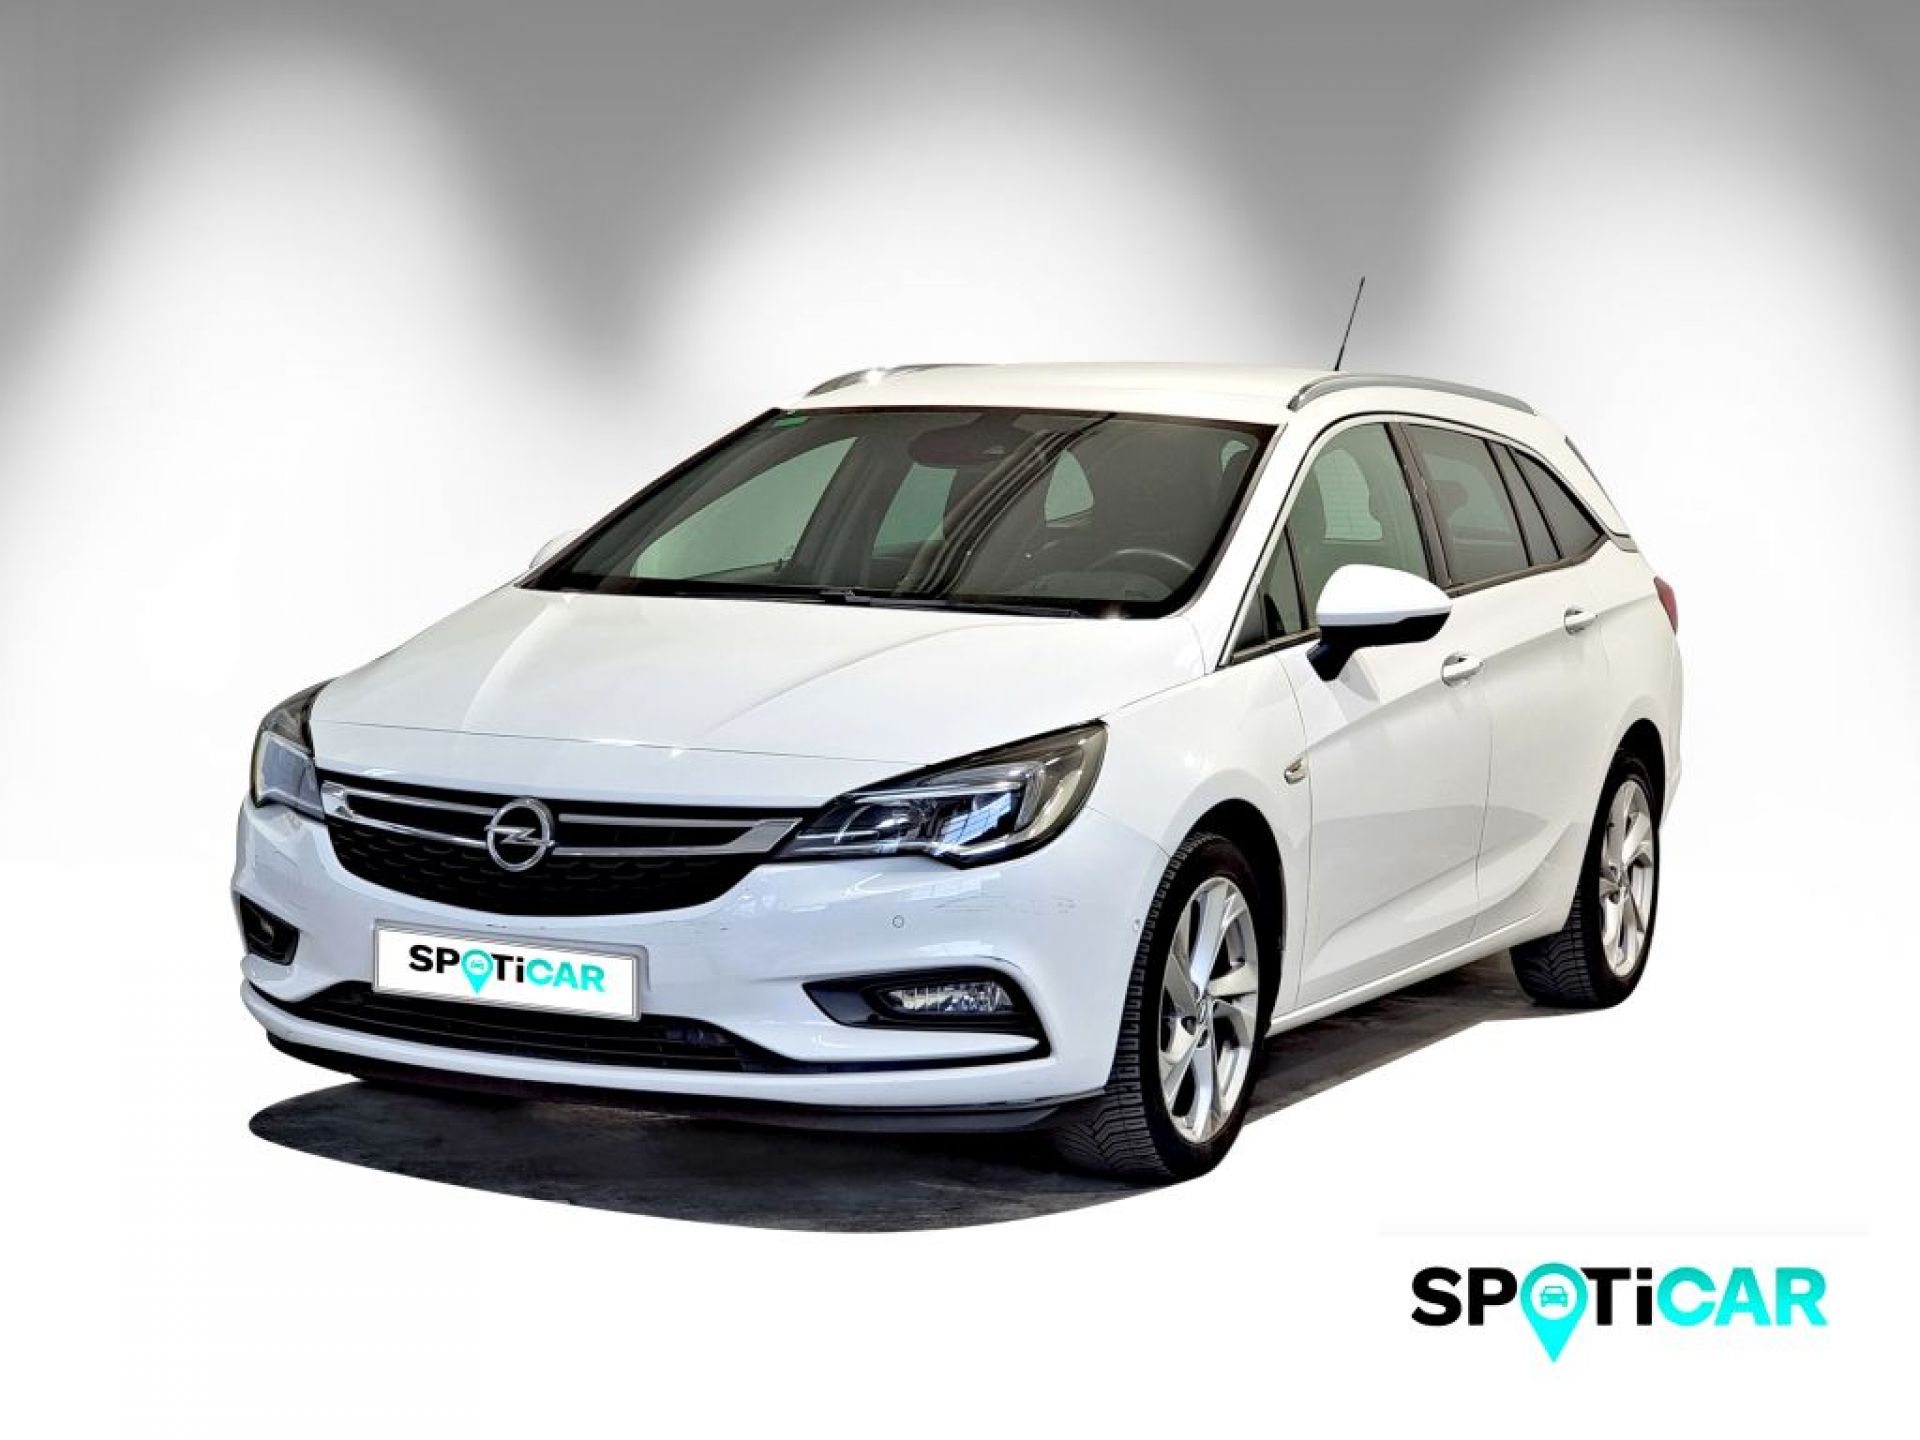 Opel astra k de segunda mano y ocasión